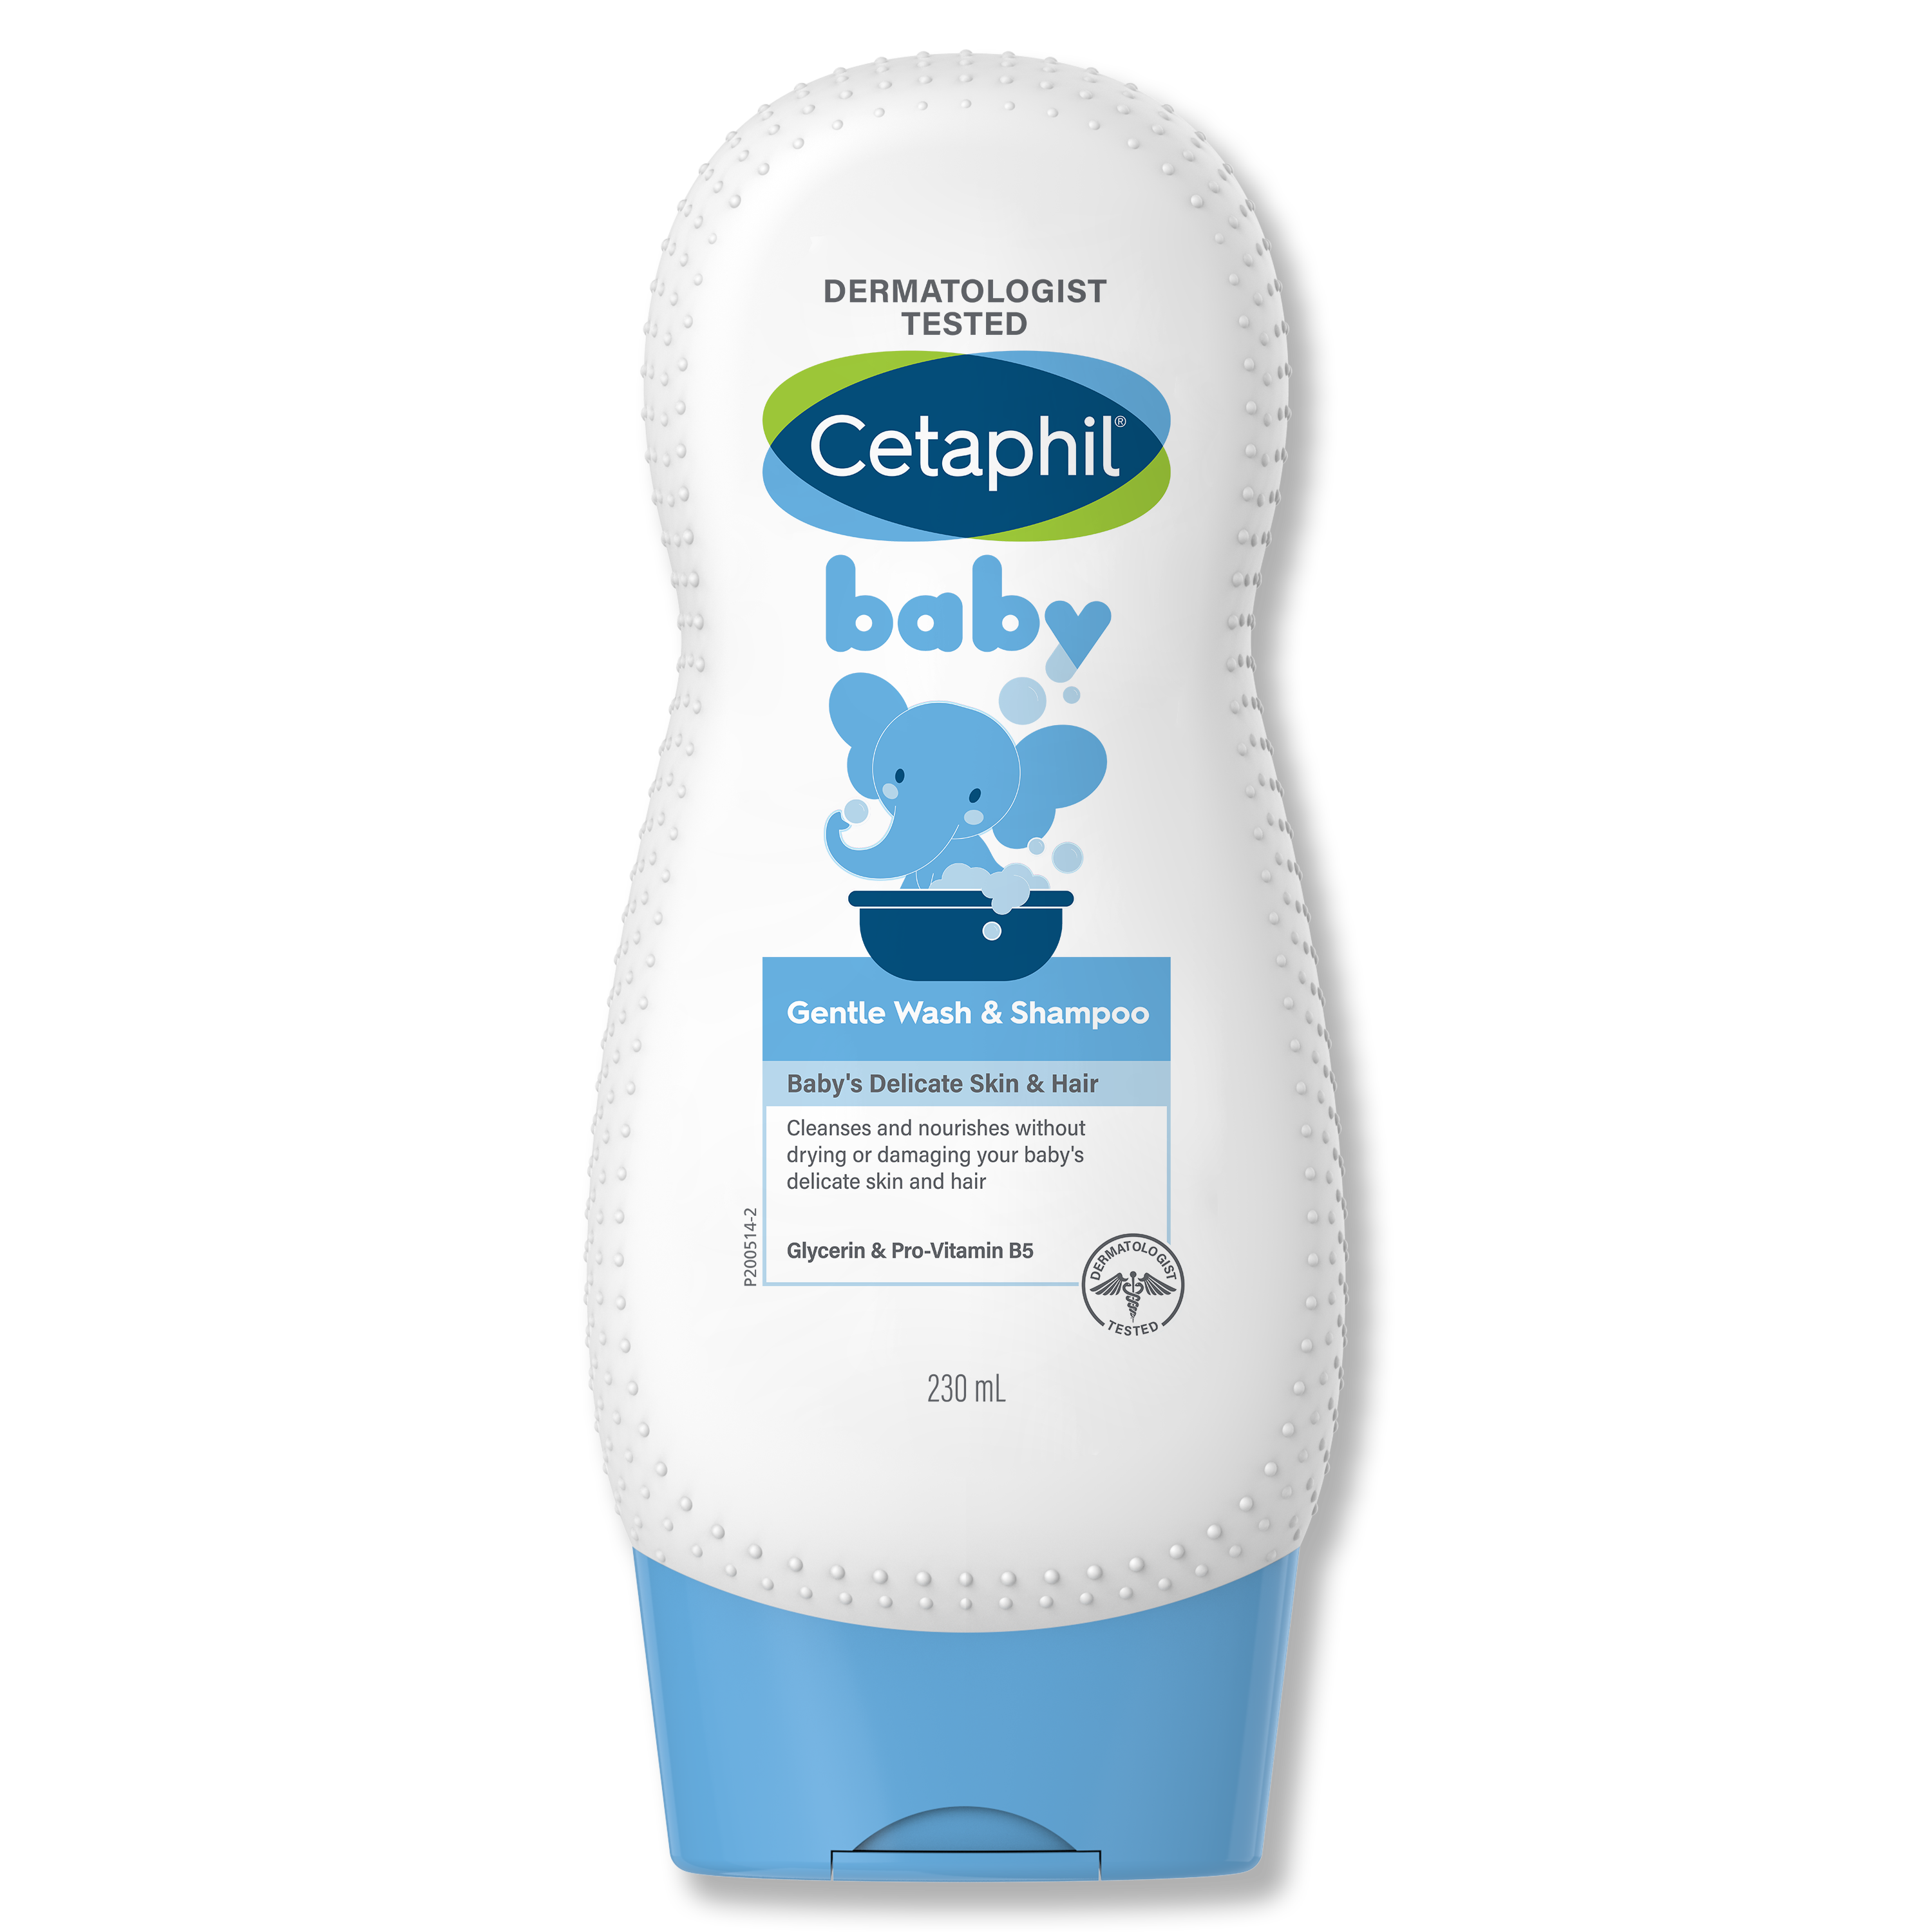 Baby Gentle Wash & Shampoo